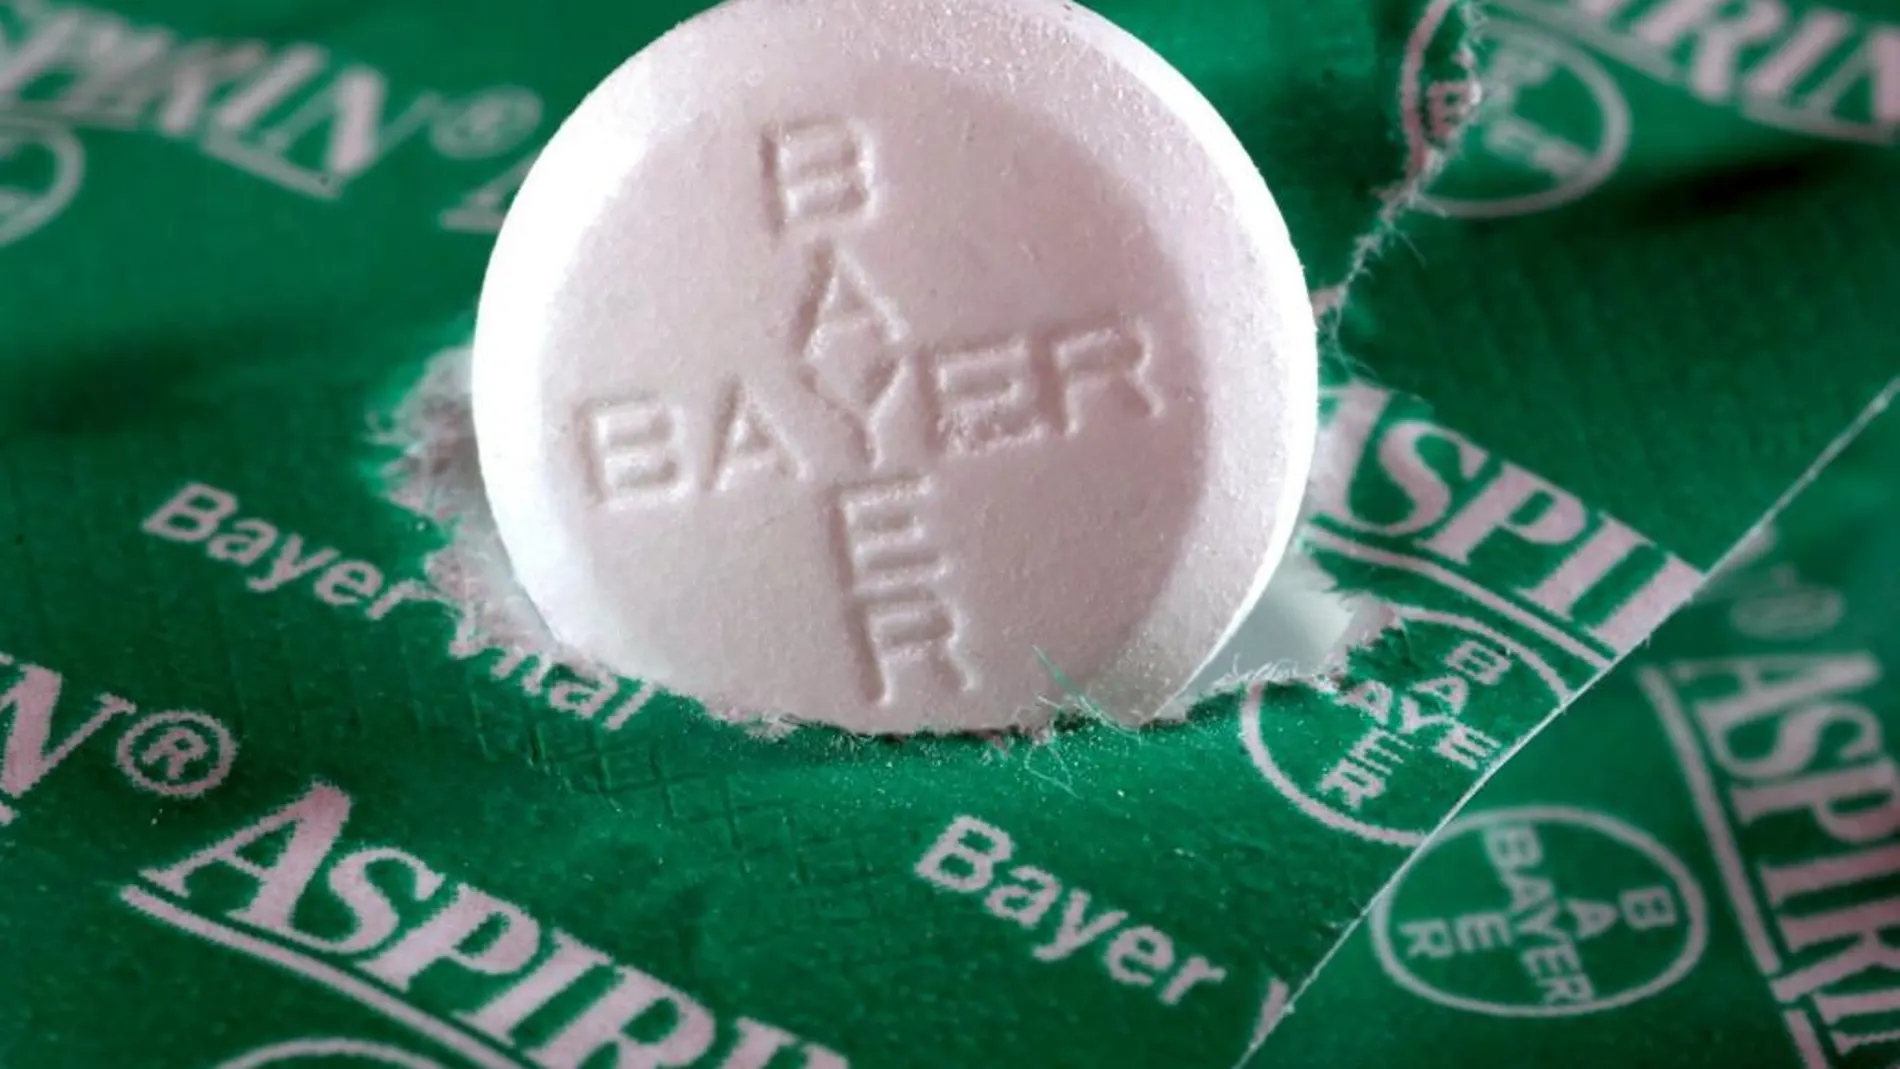 La aspirina de Bayer